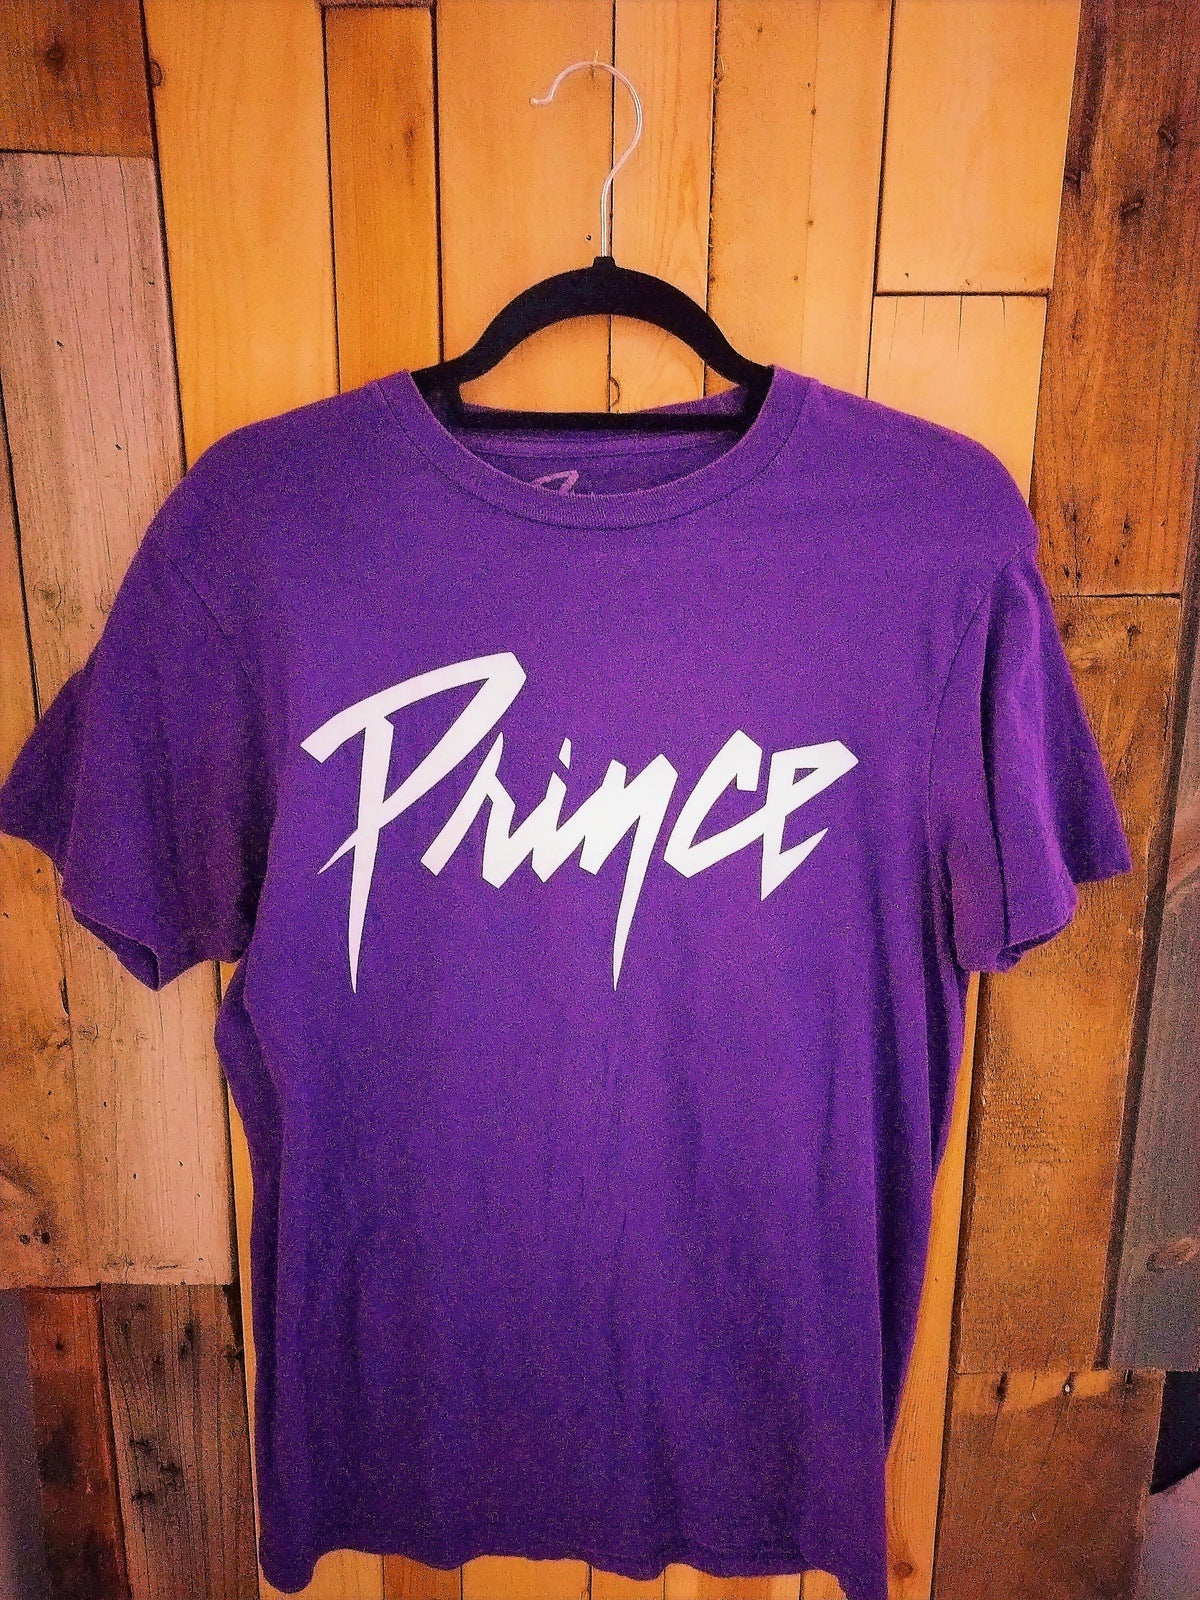 Prince Official Merchandise Purple T Shirt Size Large